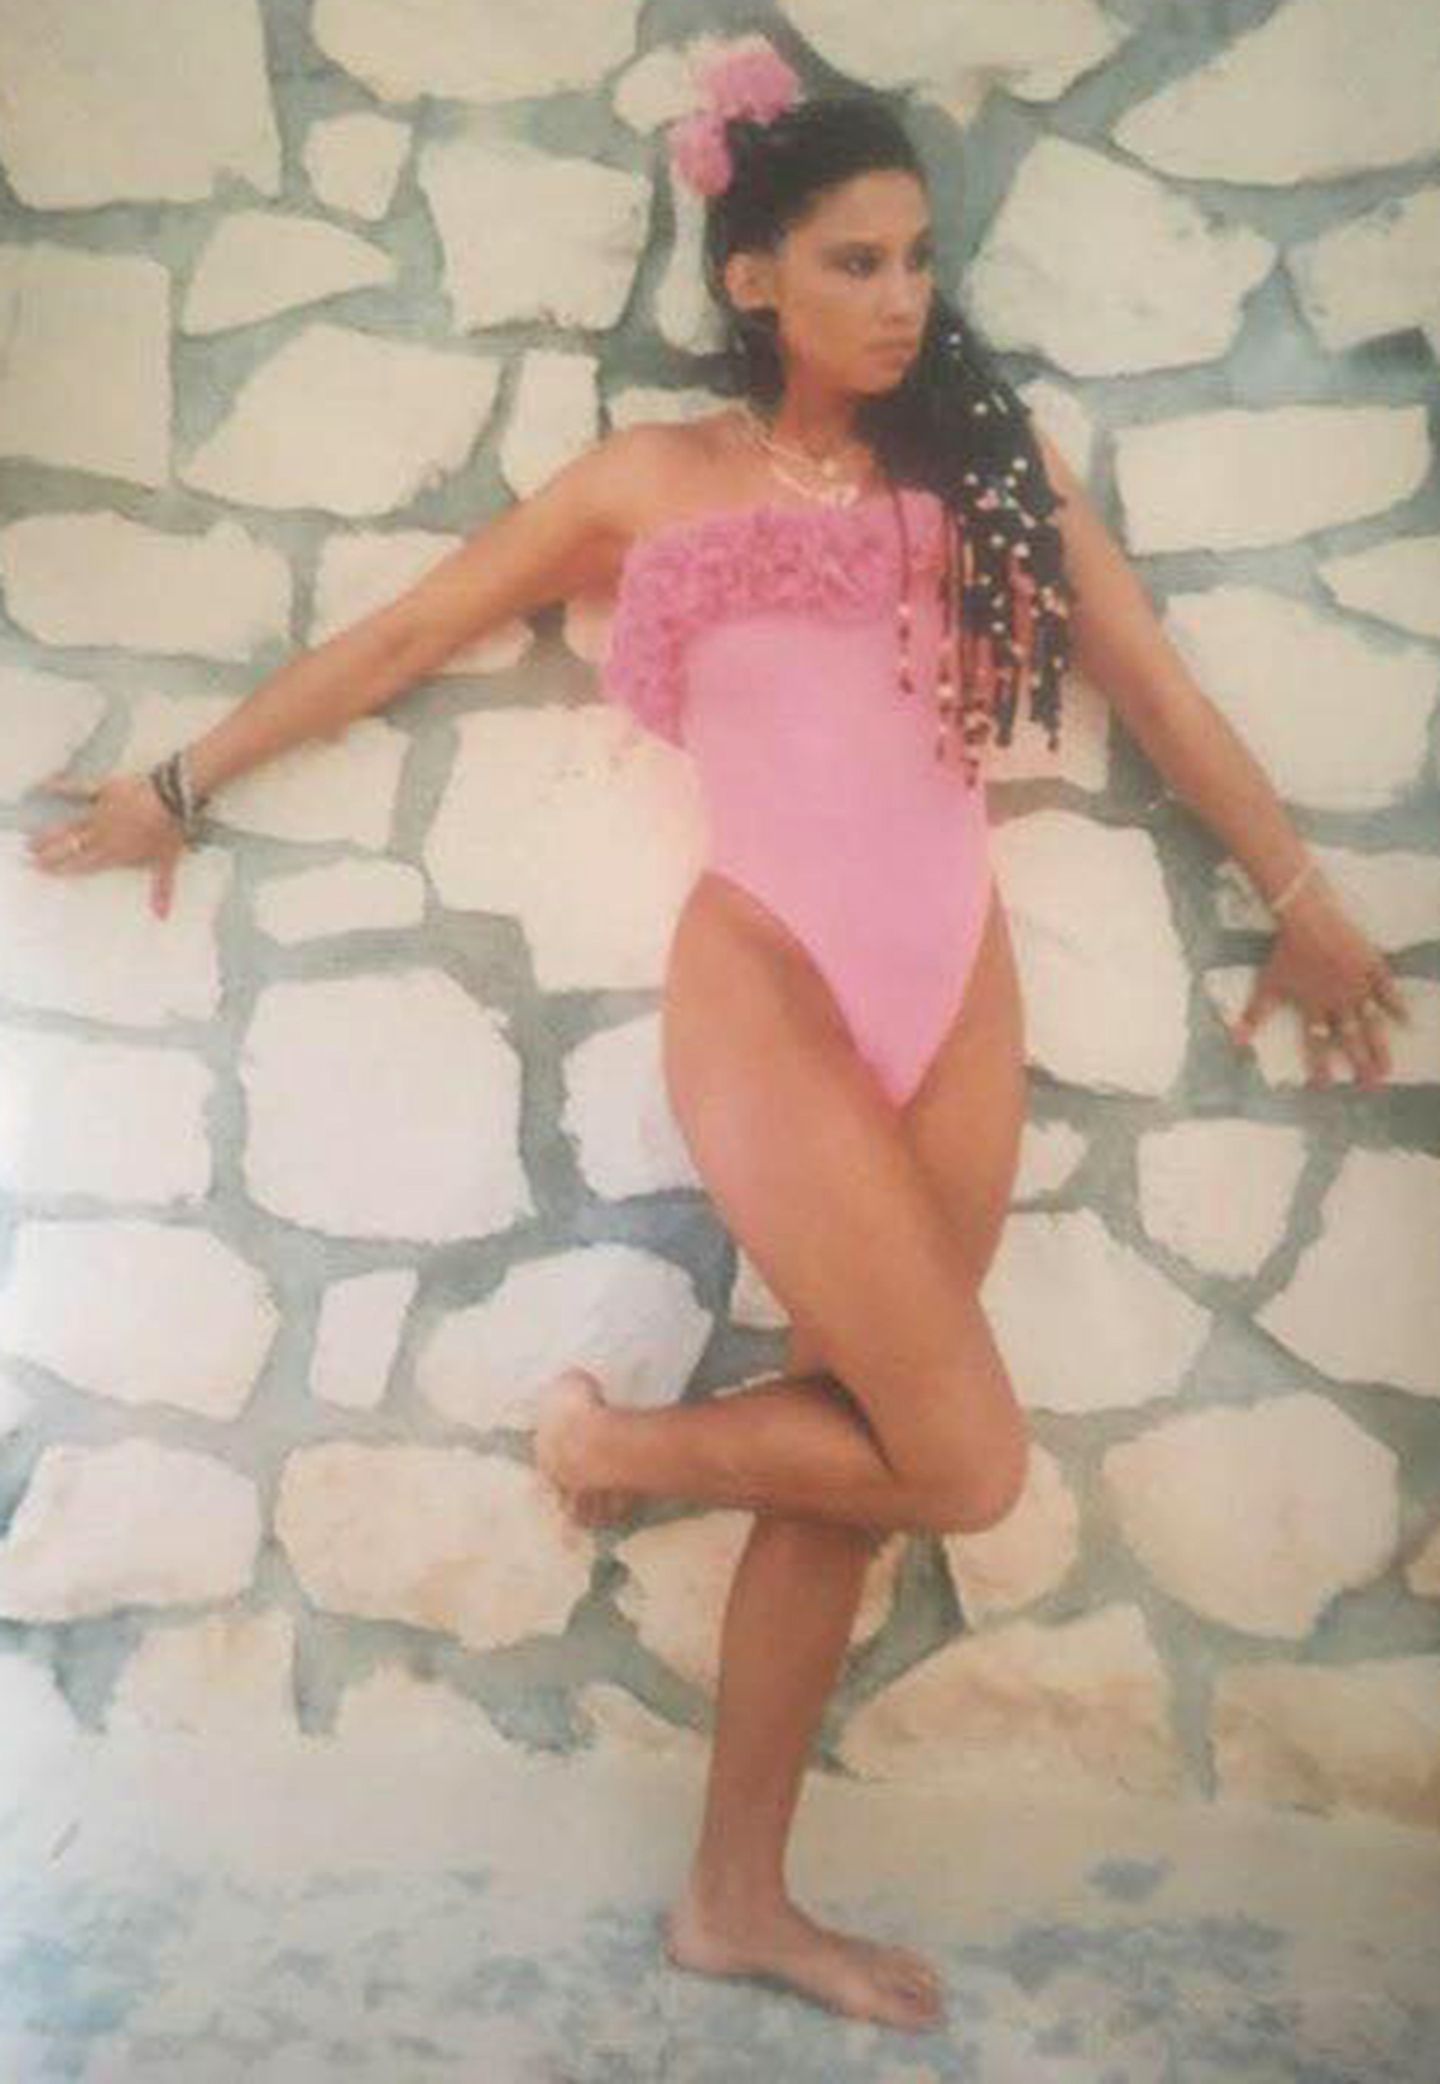 "Sweet 17" schreibt Carmen Geiss zu diesem Foto auf Facebook. Im rosafarbenen Badeanzug und mit wilden Rastazöpfen zeigt sich der Reality-Star in einer sexy Pose.